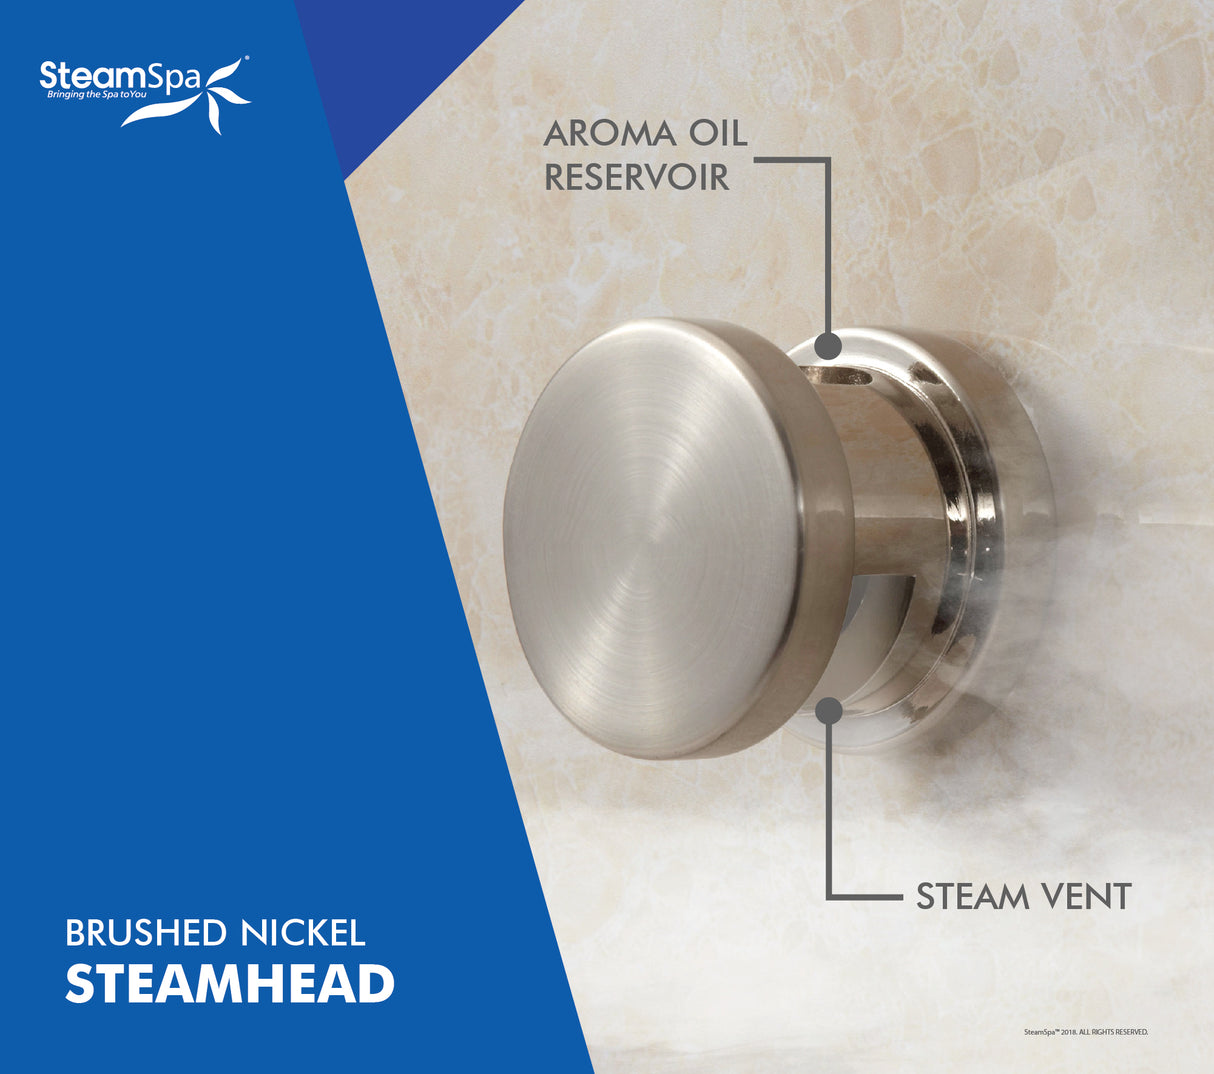 SteamSpa Royal 7.5 KW QuickStart Acu-Steam Bath Generator Package in Brushed Nickel RY750BN